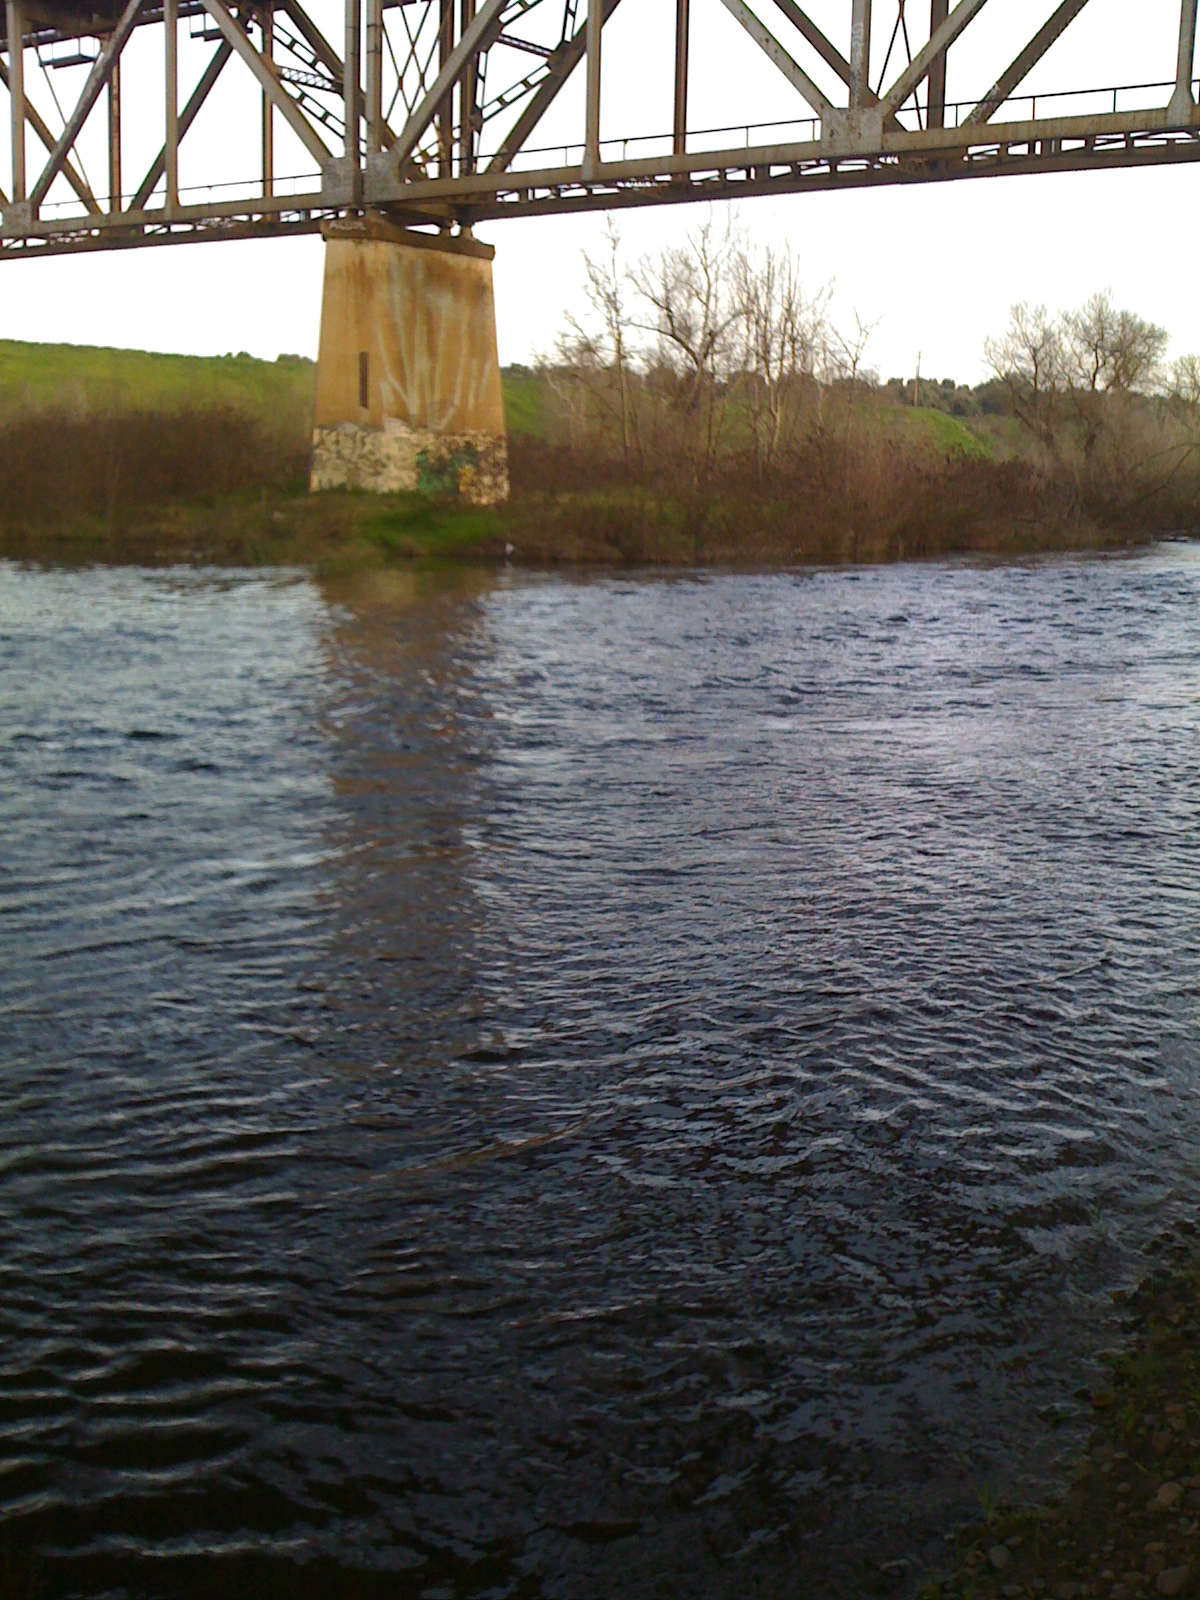 San Joaquin River at Highway 99